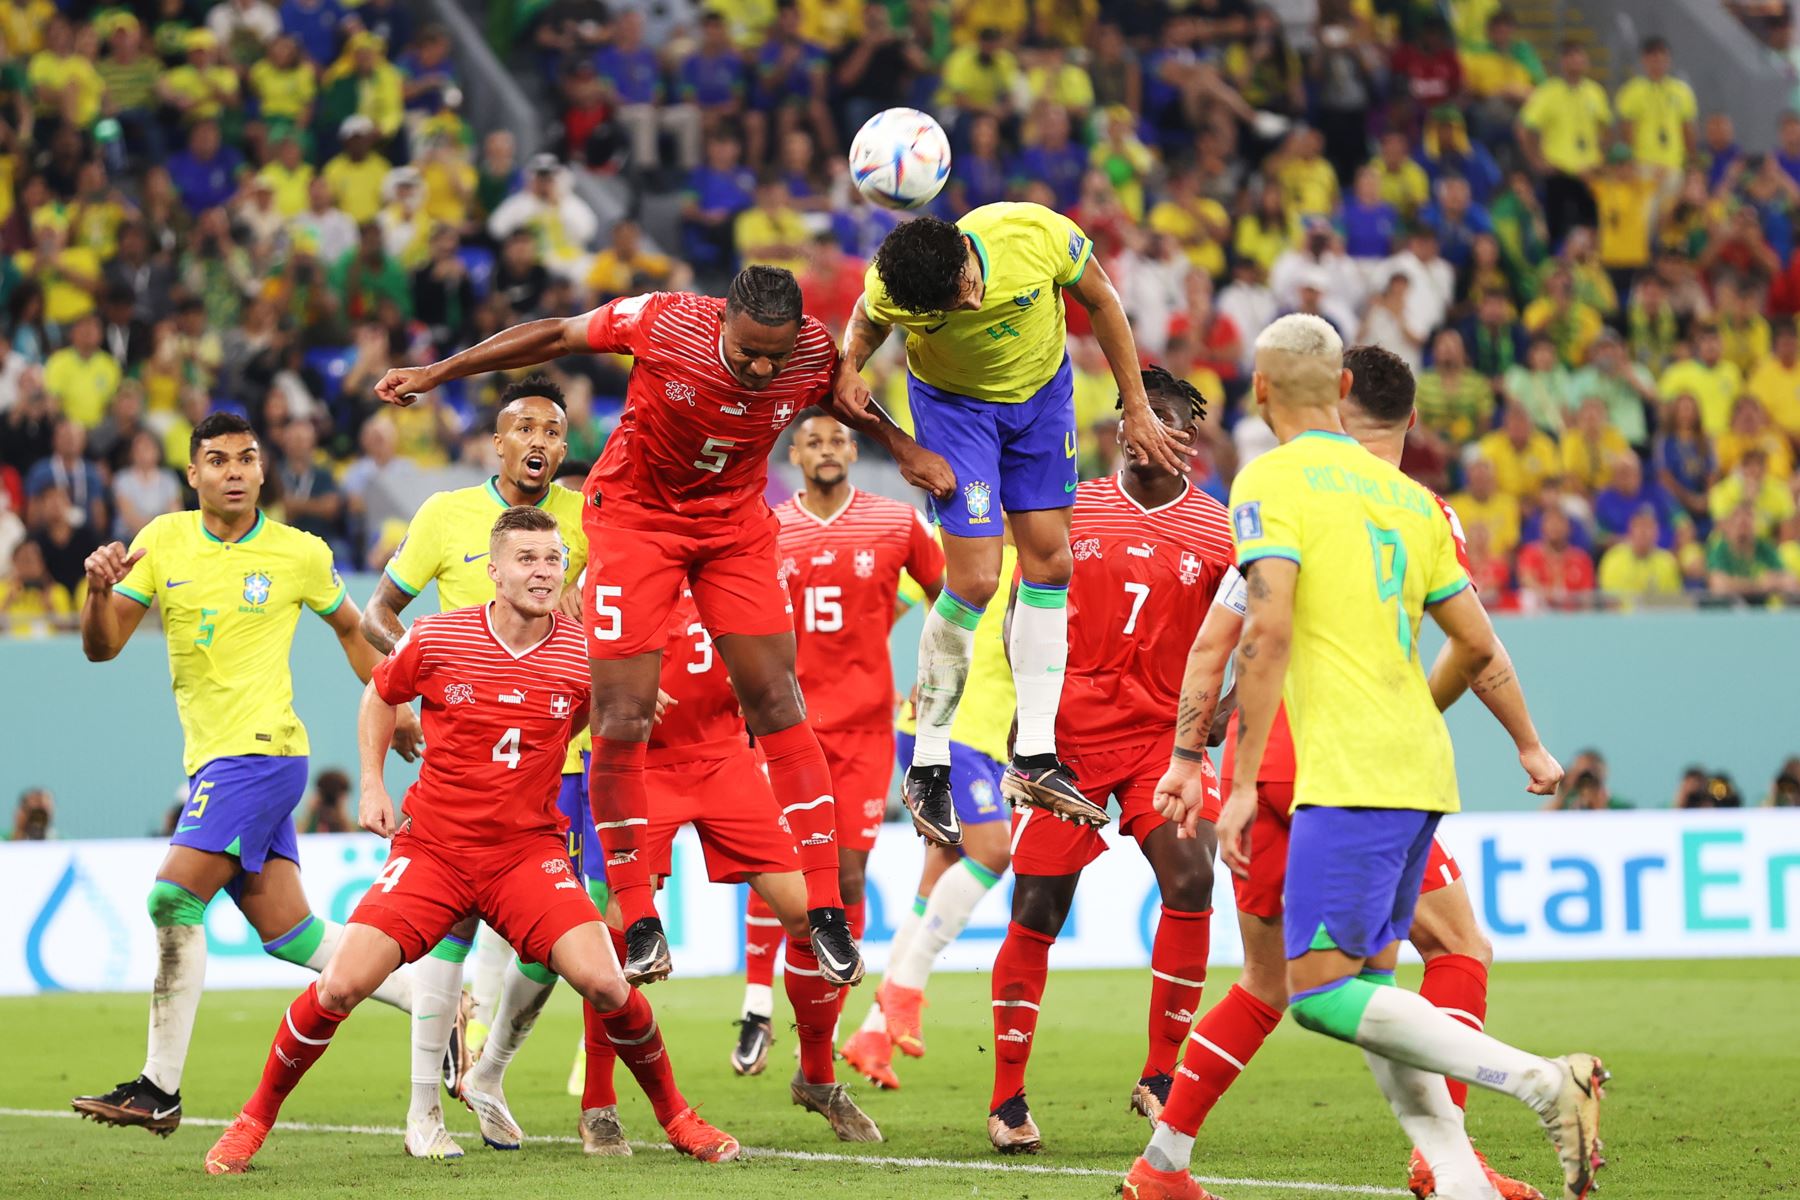 Marquinhos de Brasil en acción contra Manuel Akanji de Suiza durante el partido de fútbol del grupo G de la Copa Mundial de la FIFA 2022 entre Brasil y Suiza en el Estadio 947 en Doha, Catar. Foto: EFE